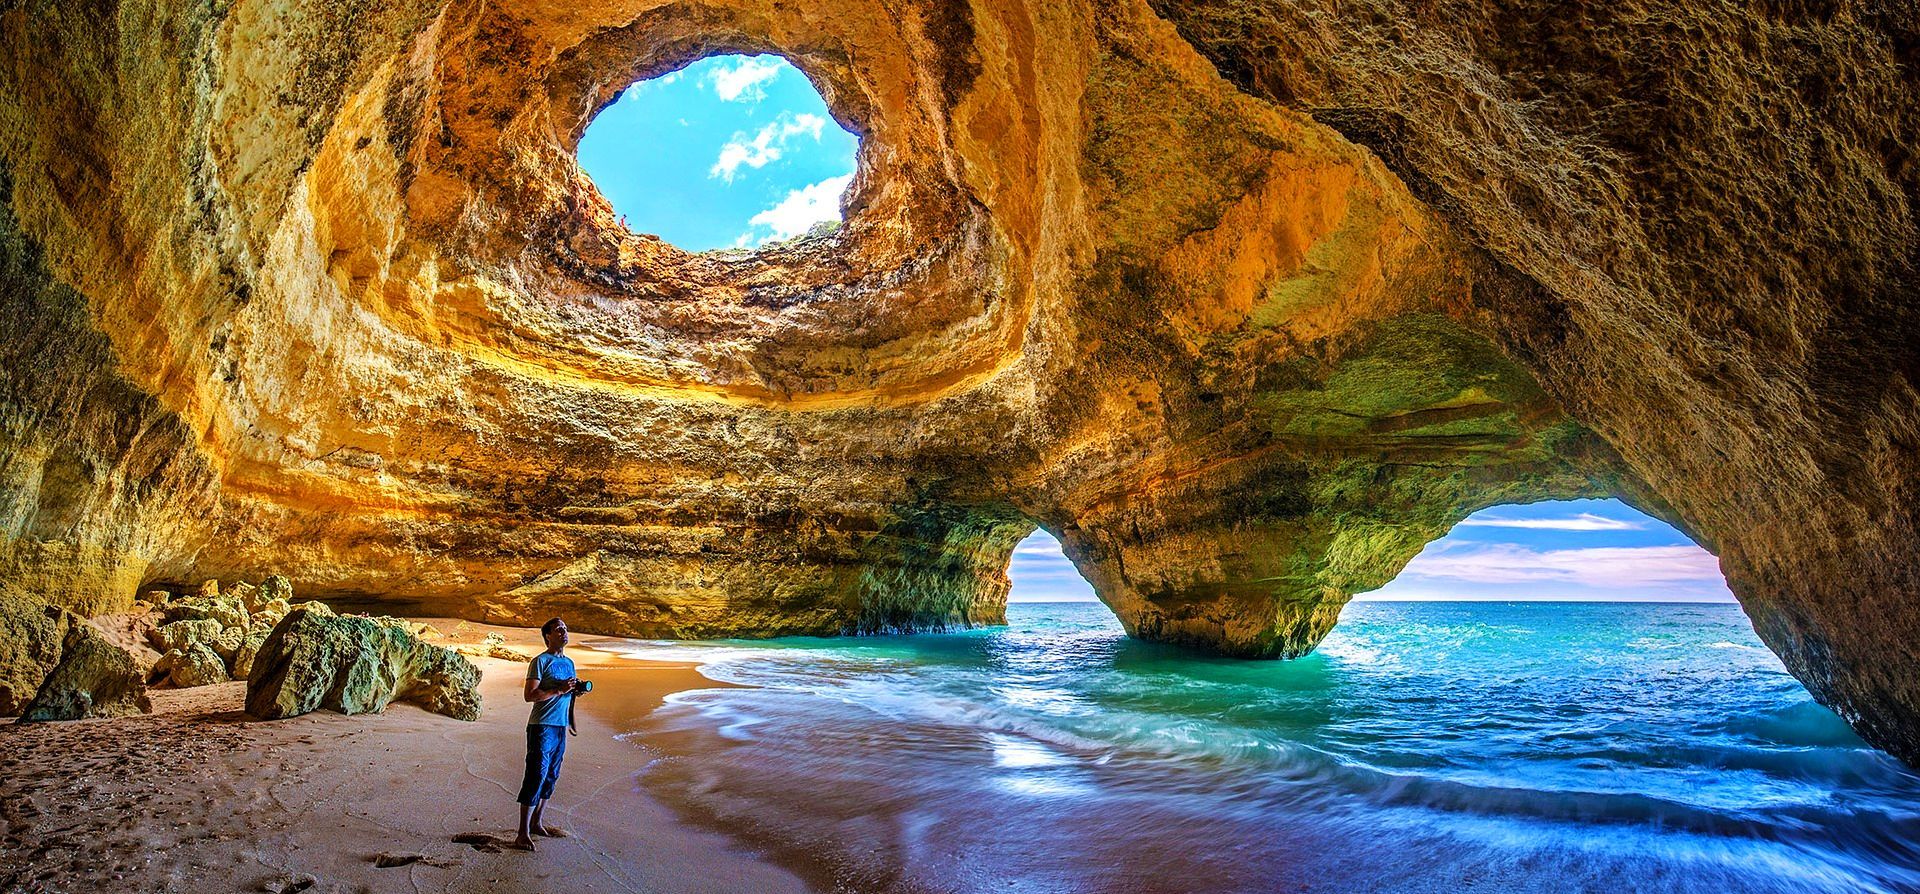 Costa de Algarve - Sumérgete en la Costa Atlántica